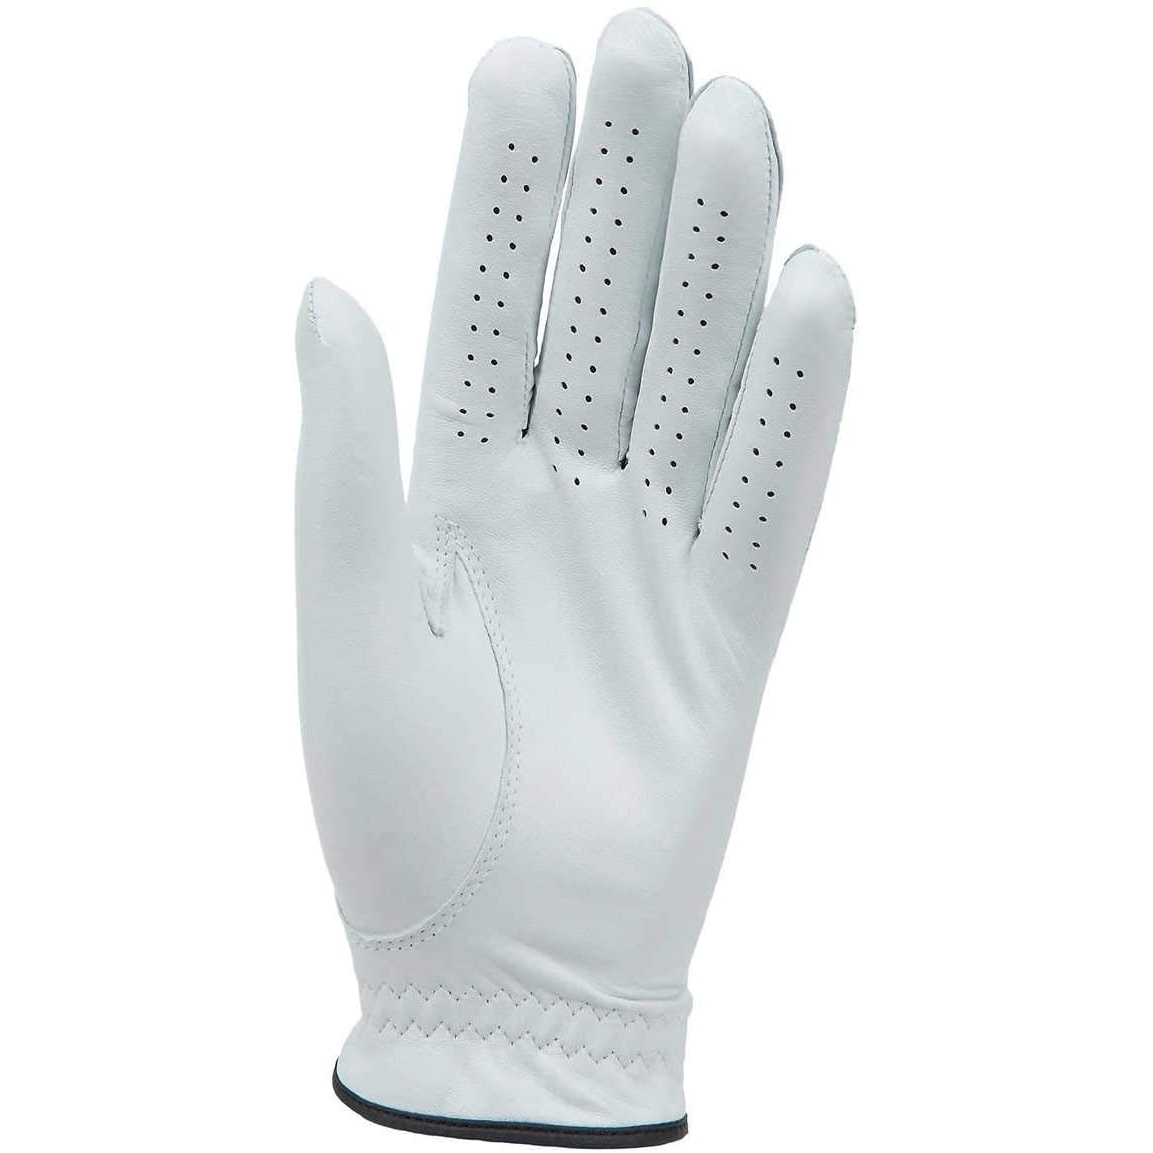 Kirkland Signature Golf Gloves Premium Cabretta Leather, Large (4 Count)